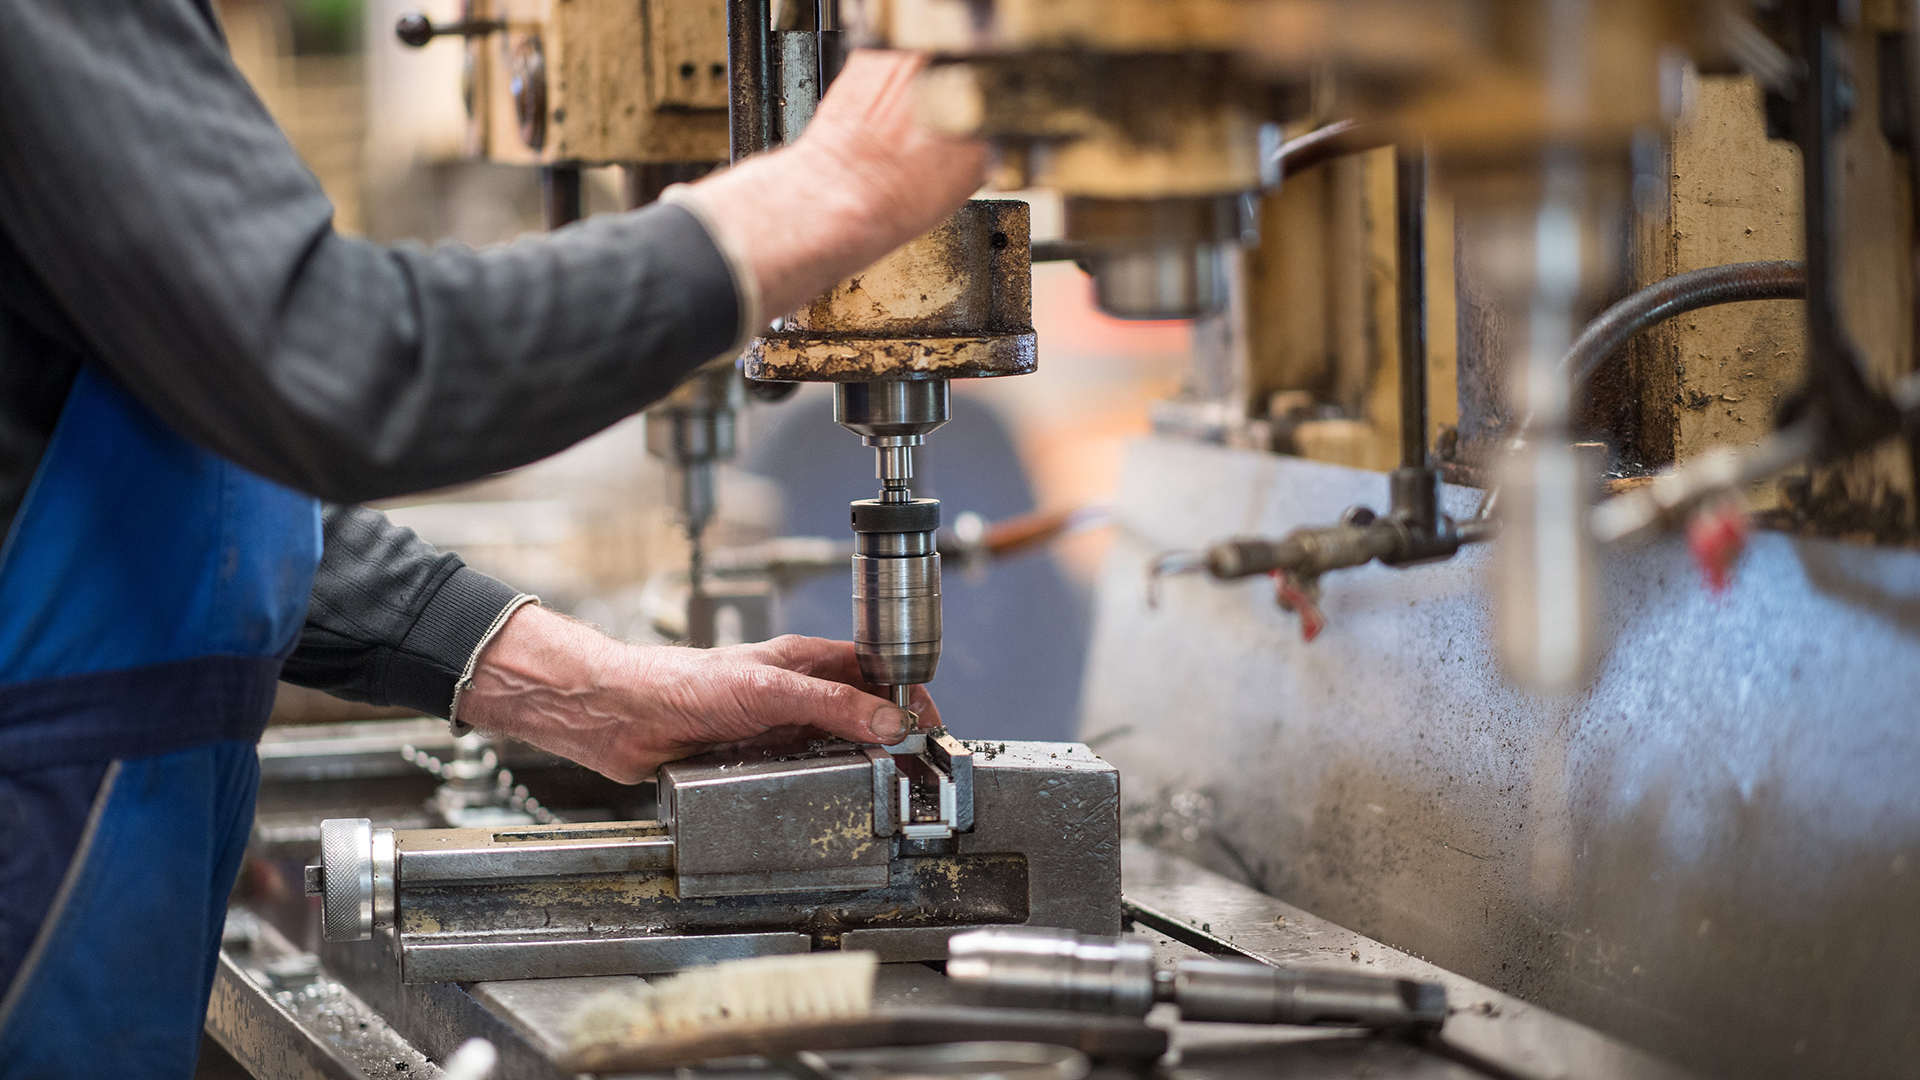 Ein Mitarbeiter bedient in der Produktionshalle einer Firma eine Maschine zur Verarbeitung von Metall.